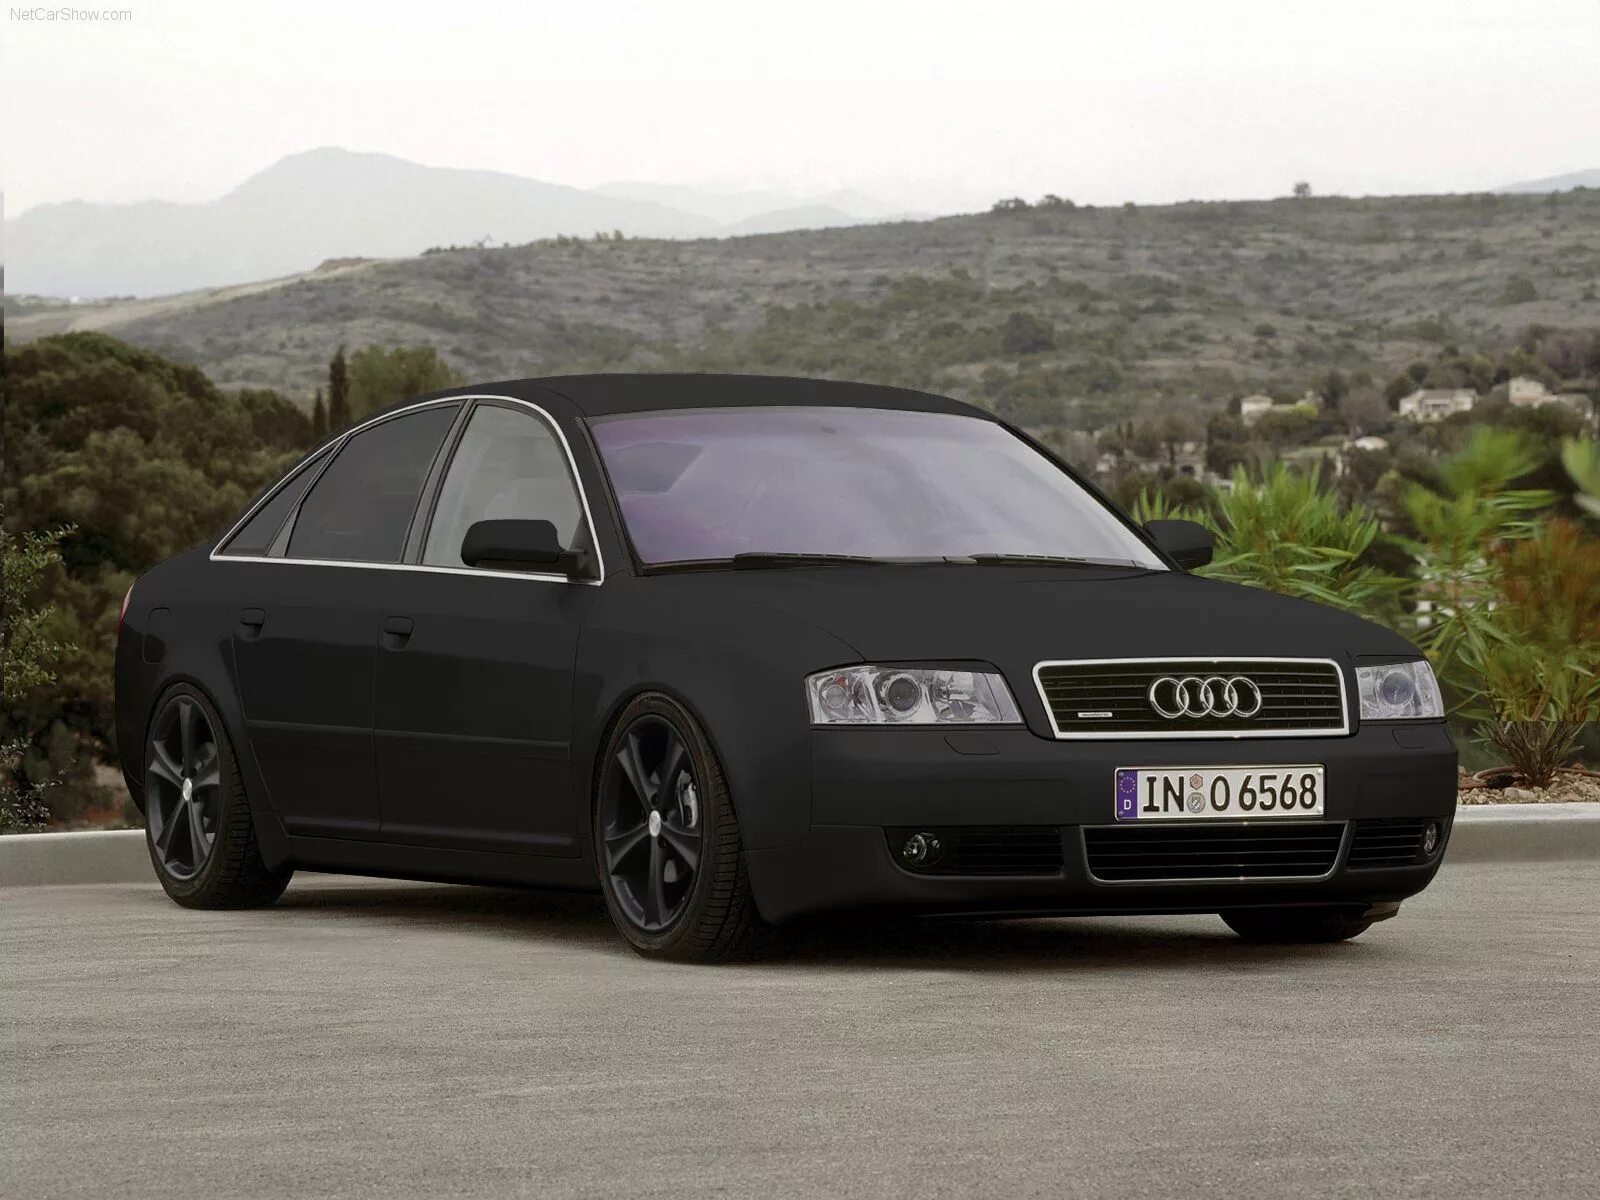 Ауди а6 ц5. Audi a6 c5. Audi a6 2002. 2002 Audi a6 Tuning. Ауди а6 с5 черная матовая.